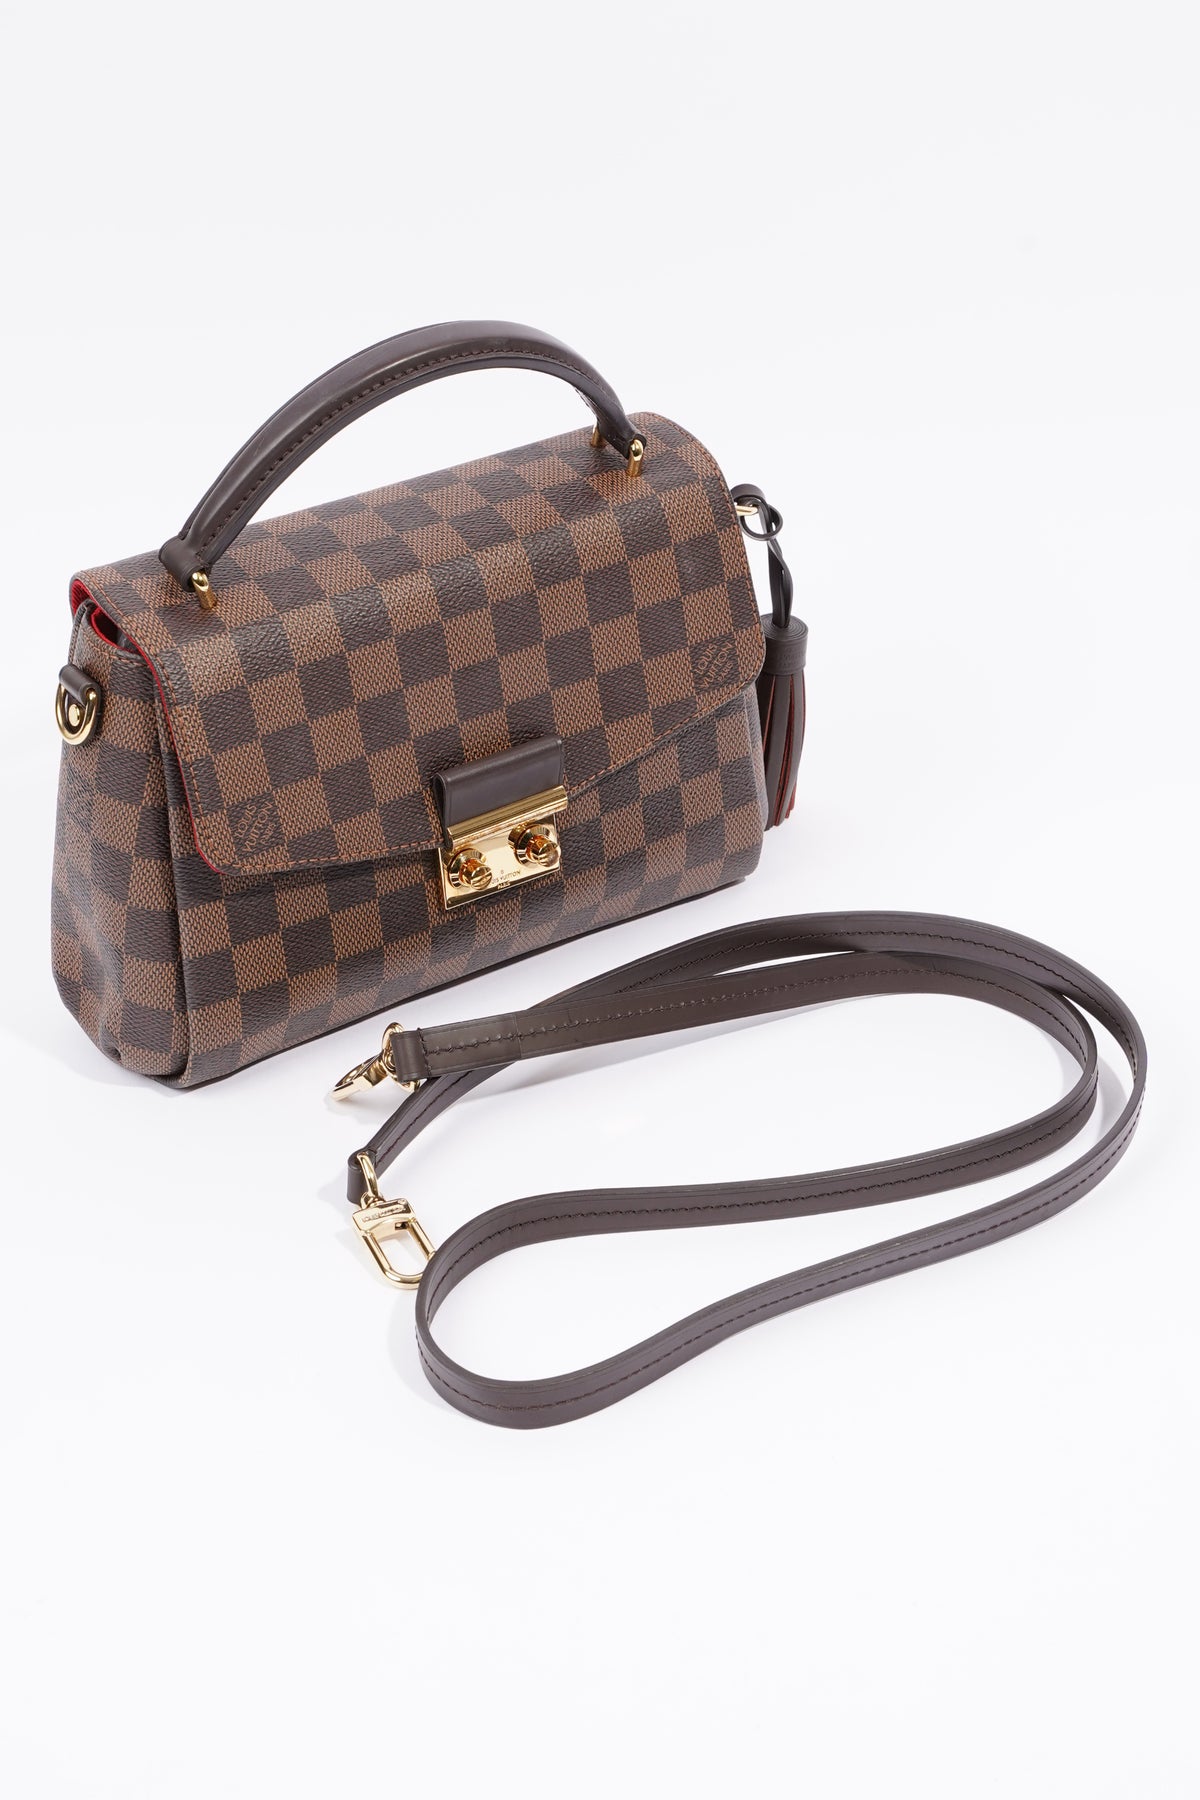 Croisette Damier Ebene Canvas Handbag with Strap – Poshbag Boutique